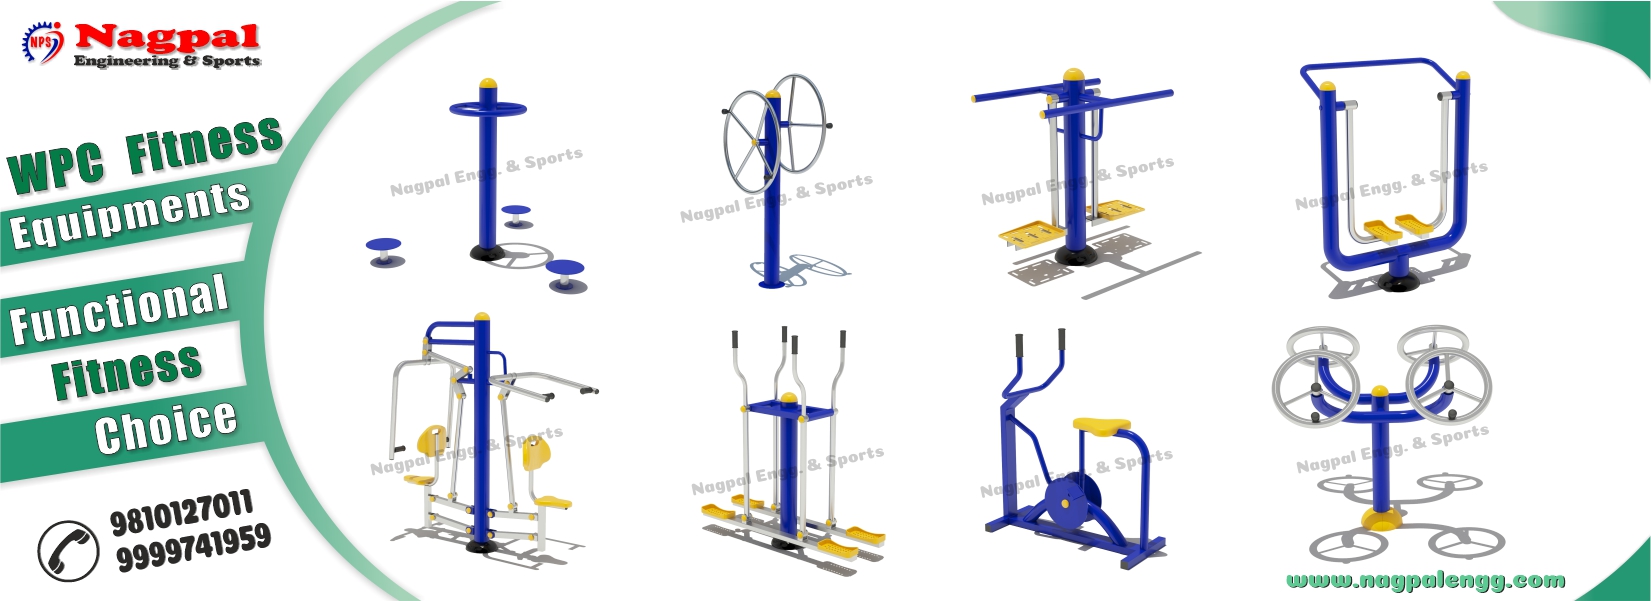 Fitness playground equipment